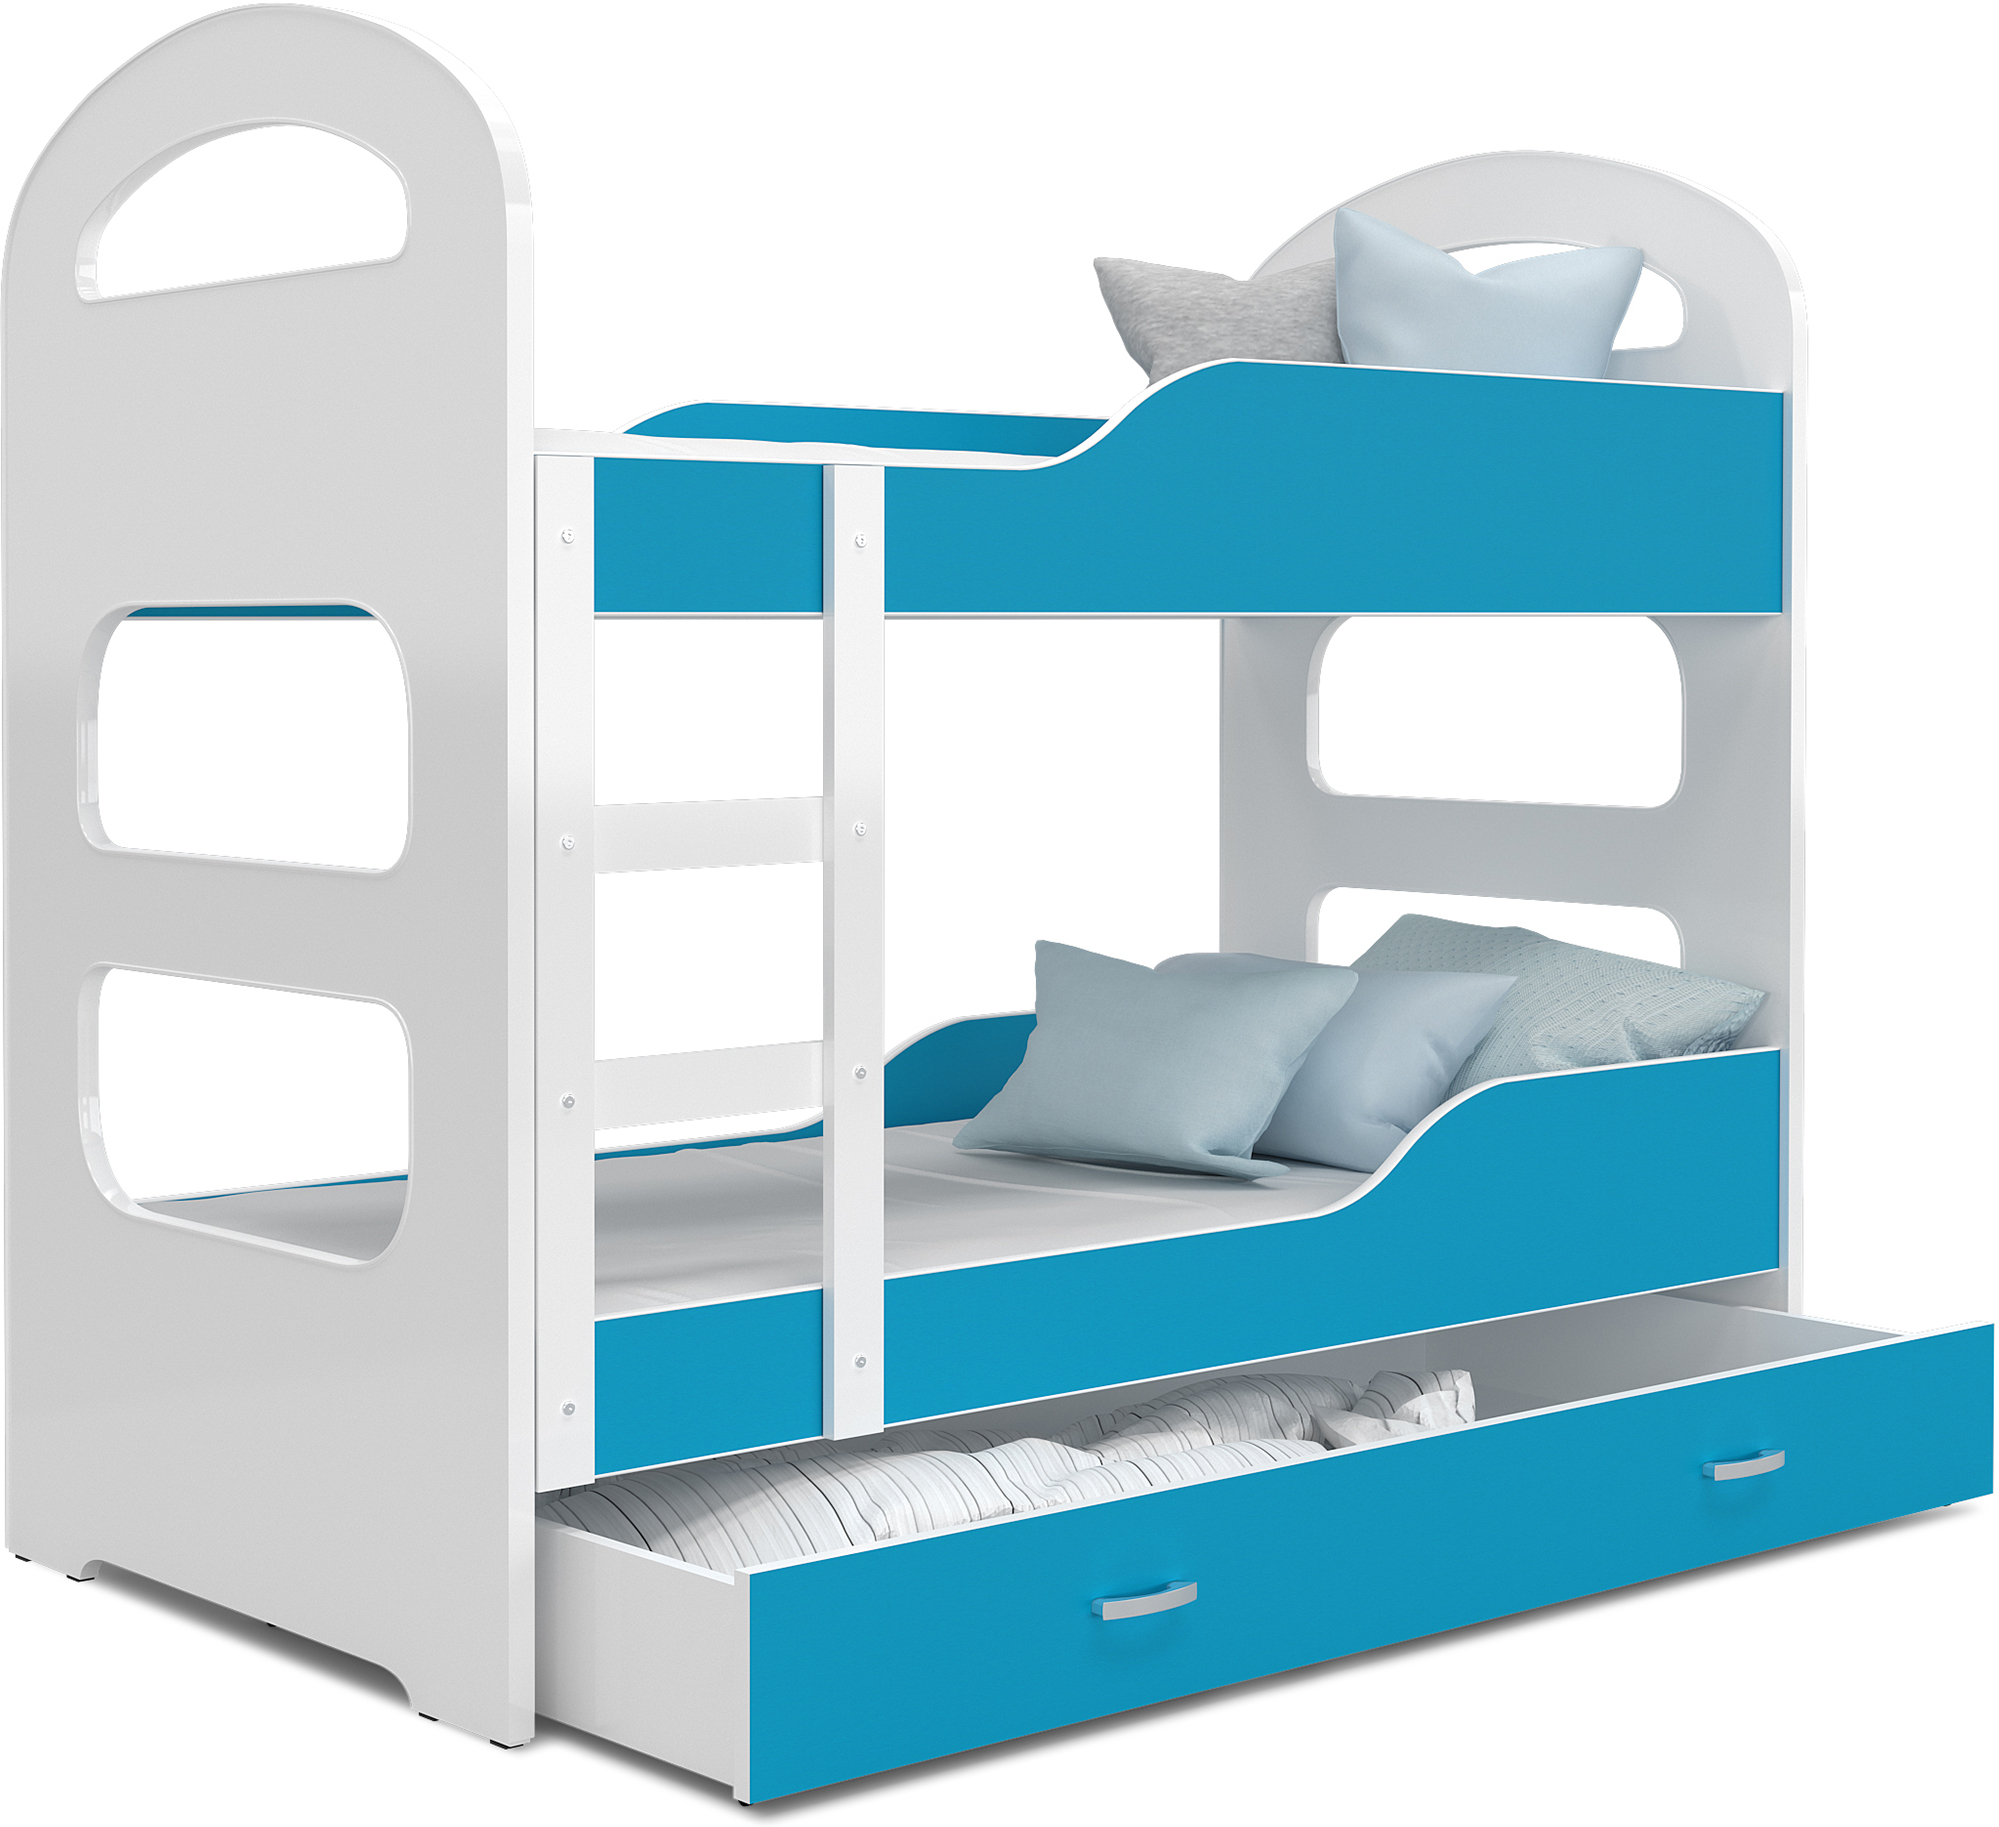 Detská poschodová posteľ DOMINIK 160x80 BIELA-MODRÁ